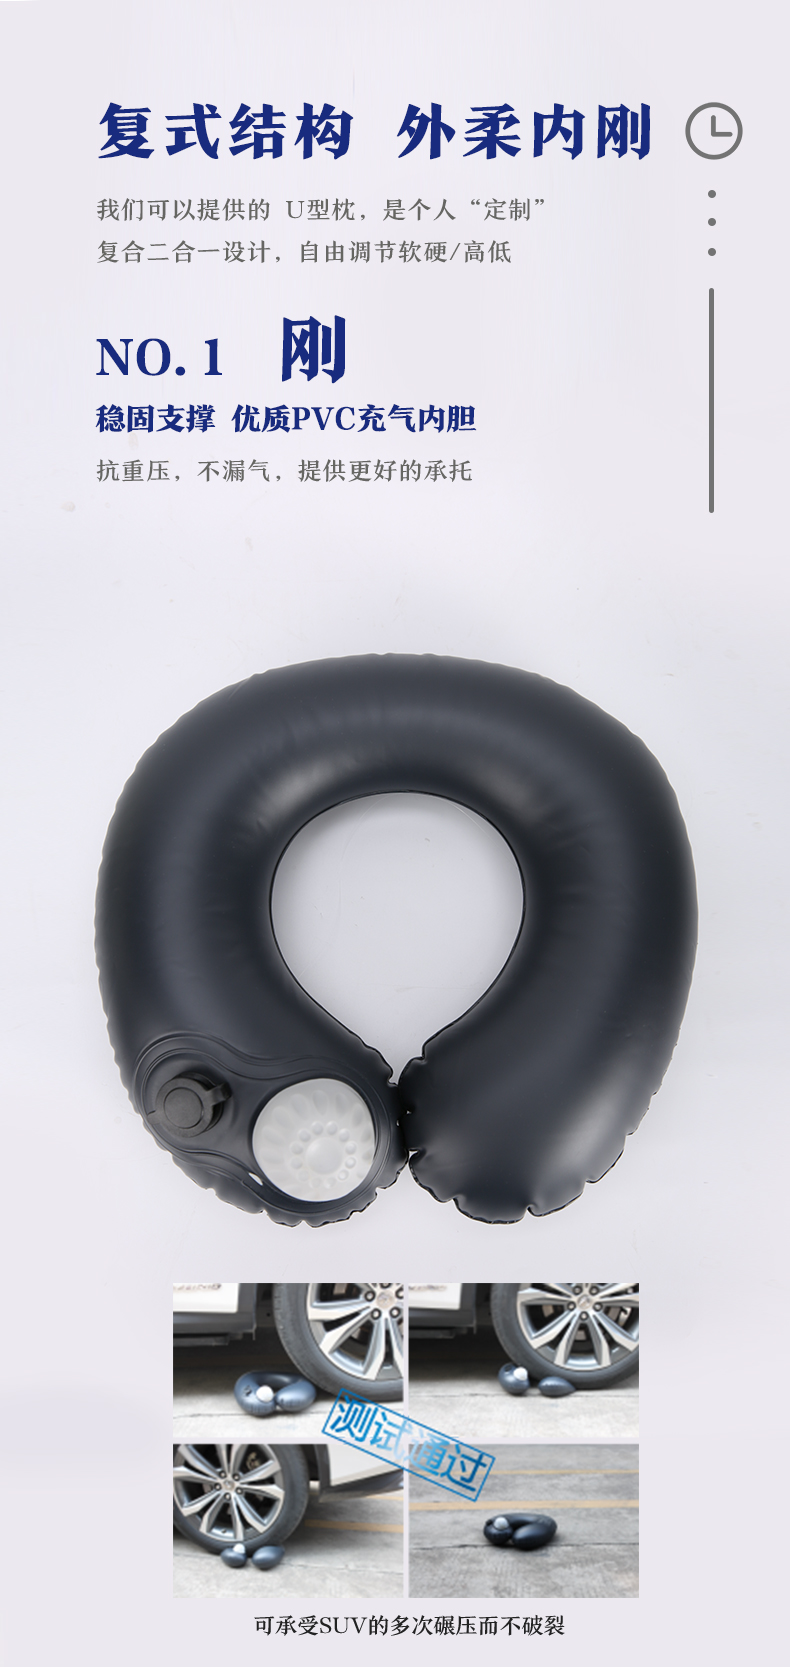 便携充气枕_自动充气枕相关-广州好用科技有限公司